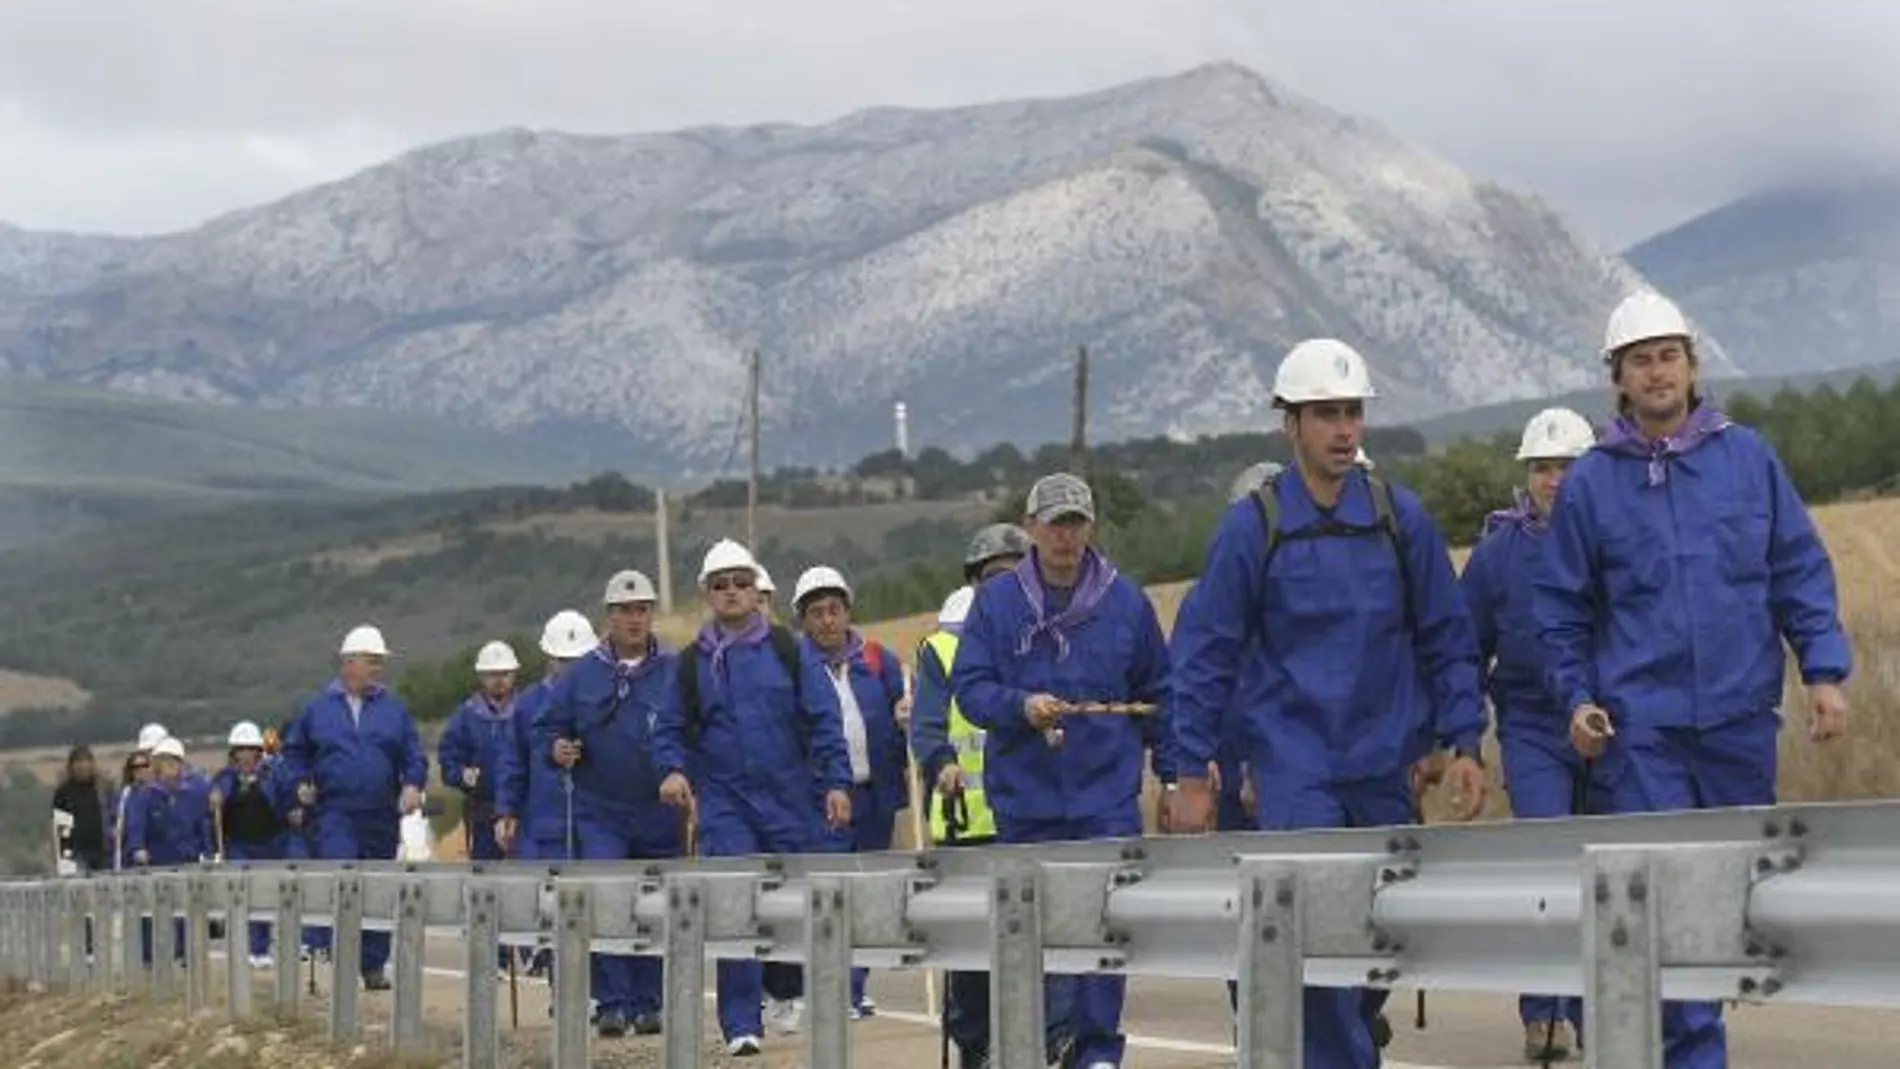 Veinticinco mineros, entre ellos cuatro mujeres, han iniciado hoy la primera marcha negra palentina que recorrerá hasta el miércoles los casi 100 kilómetros que separan Guardo de Palencia,